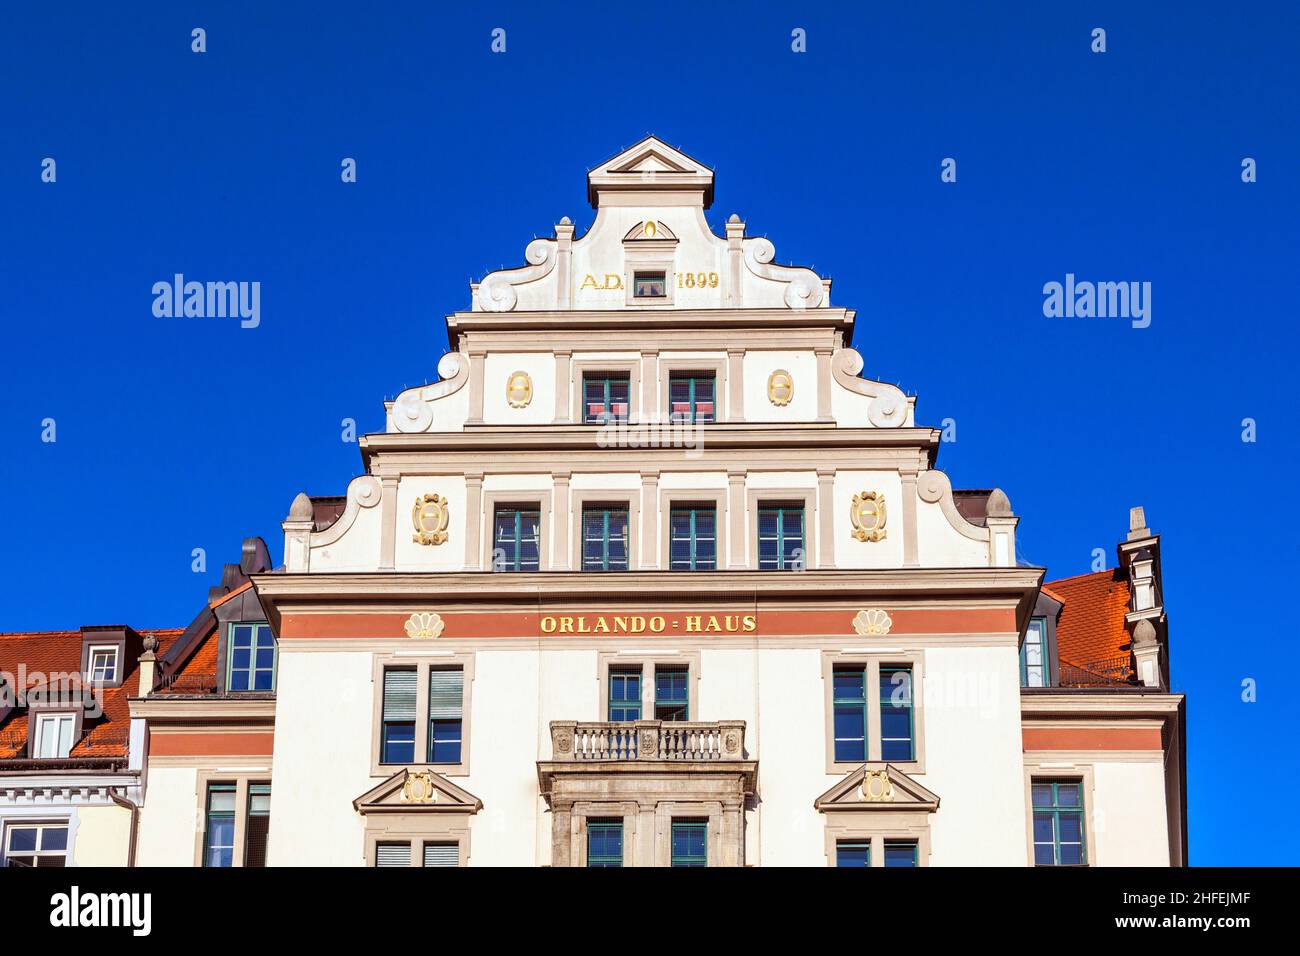 Frente y fachada de la antigua casa de Orlando en Munich Foto de stock